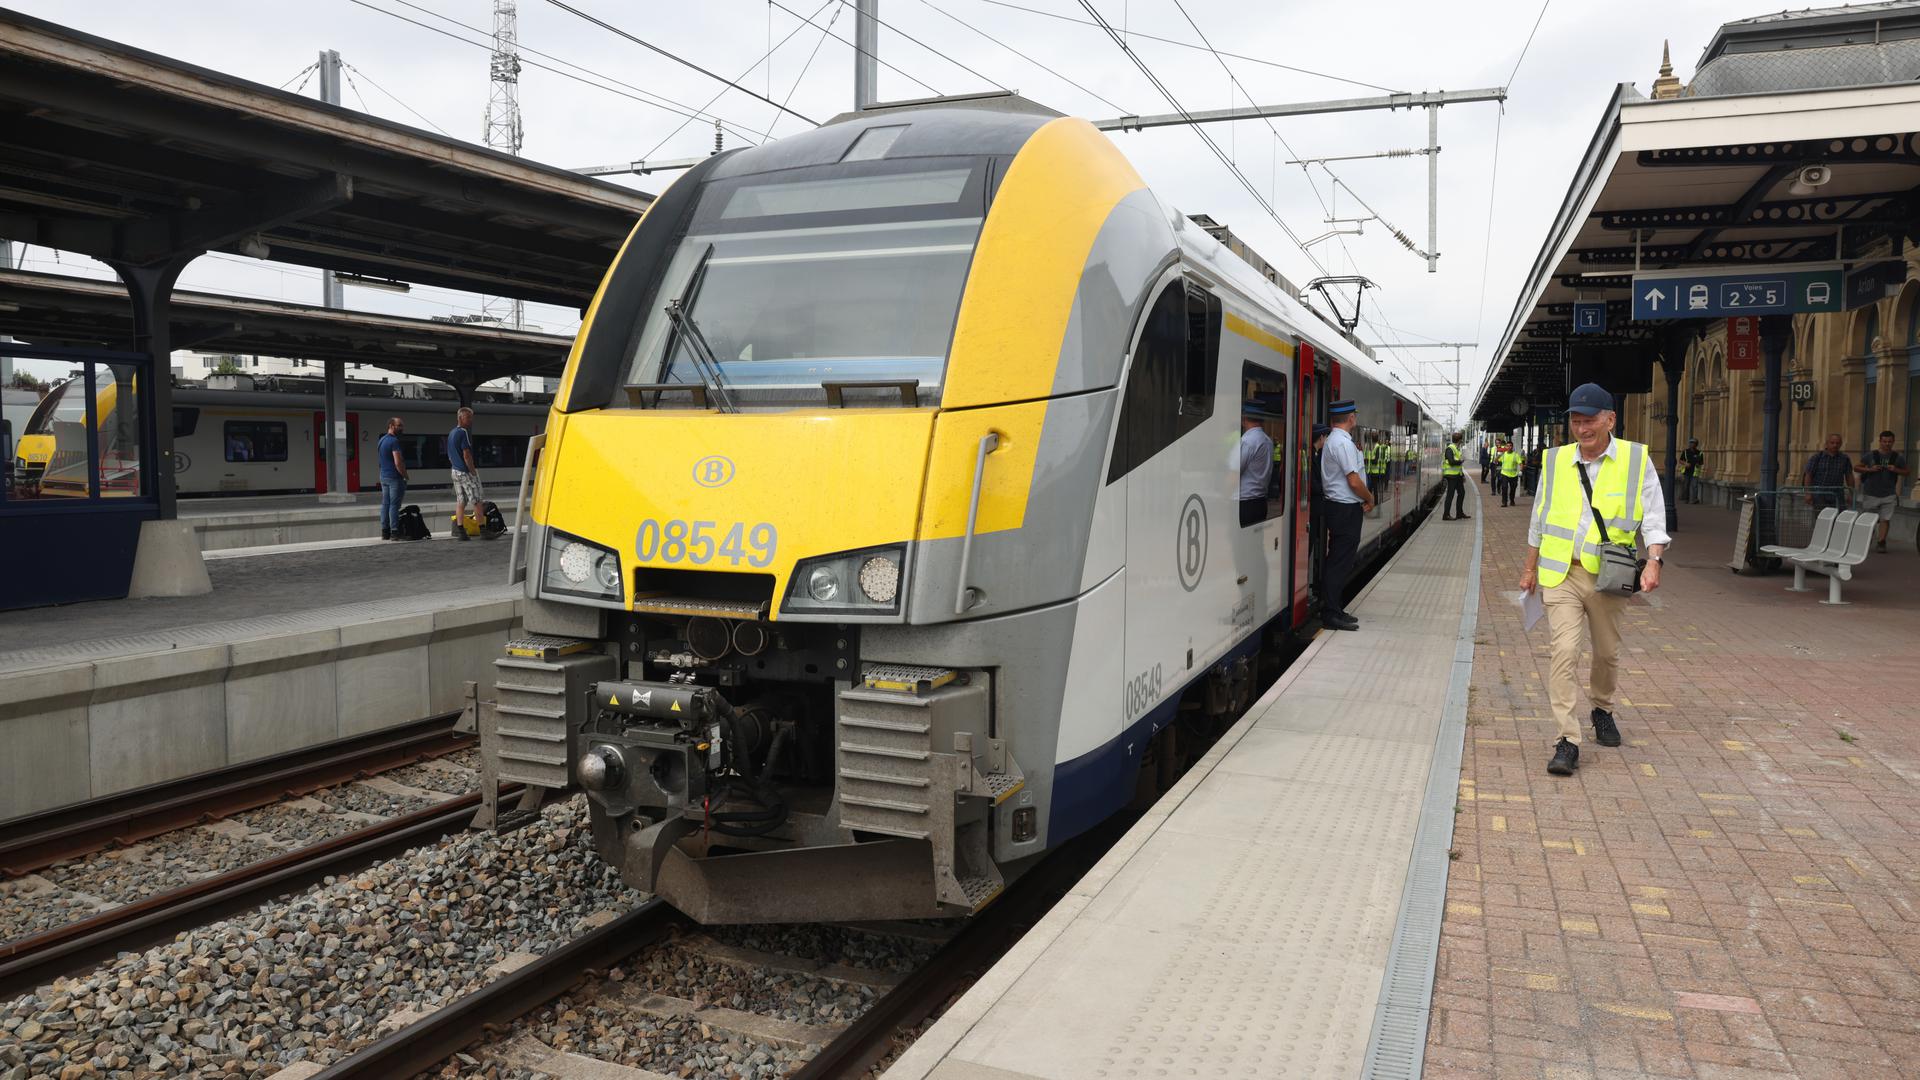 Les travaux de réélectrification vont permettre de faire circuler plus de trains sur la ligne 162, à une plus grande vitesse.